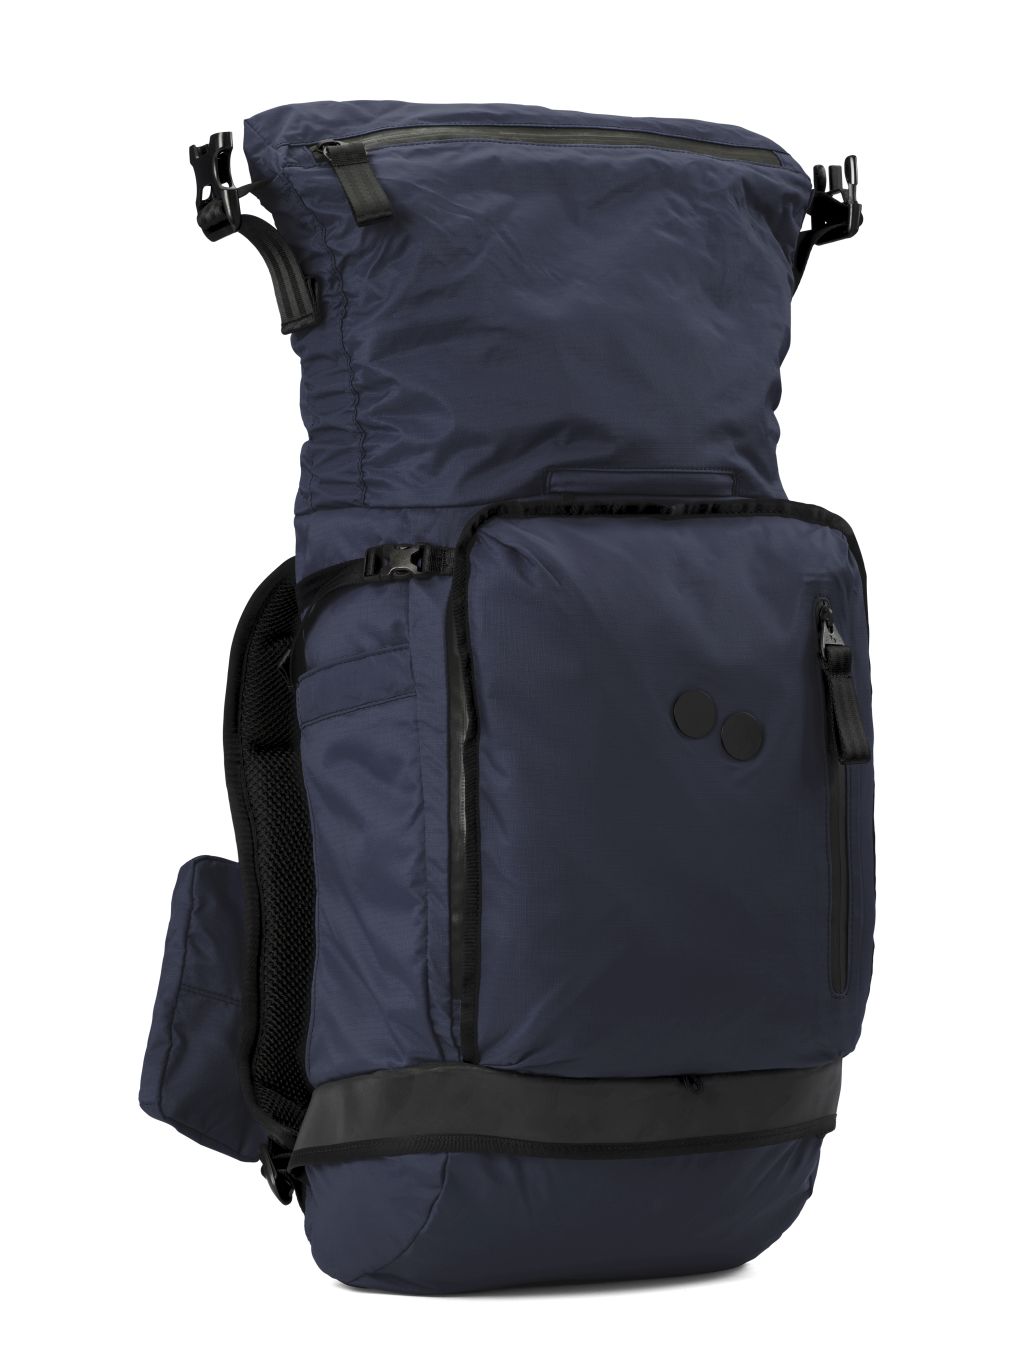 Komut Medium Backpack Pure Navy